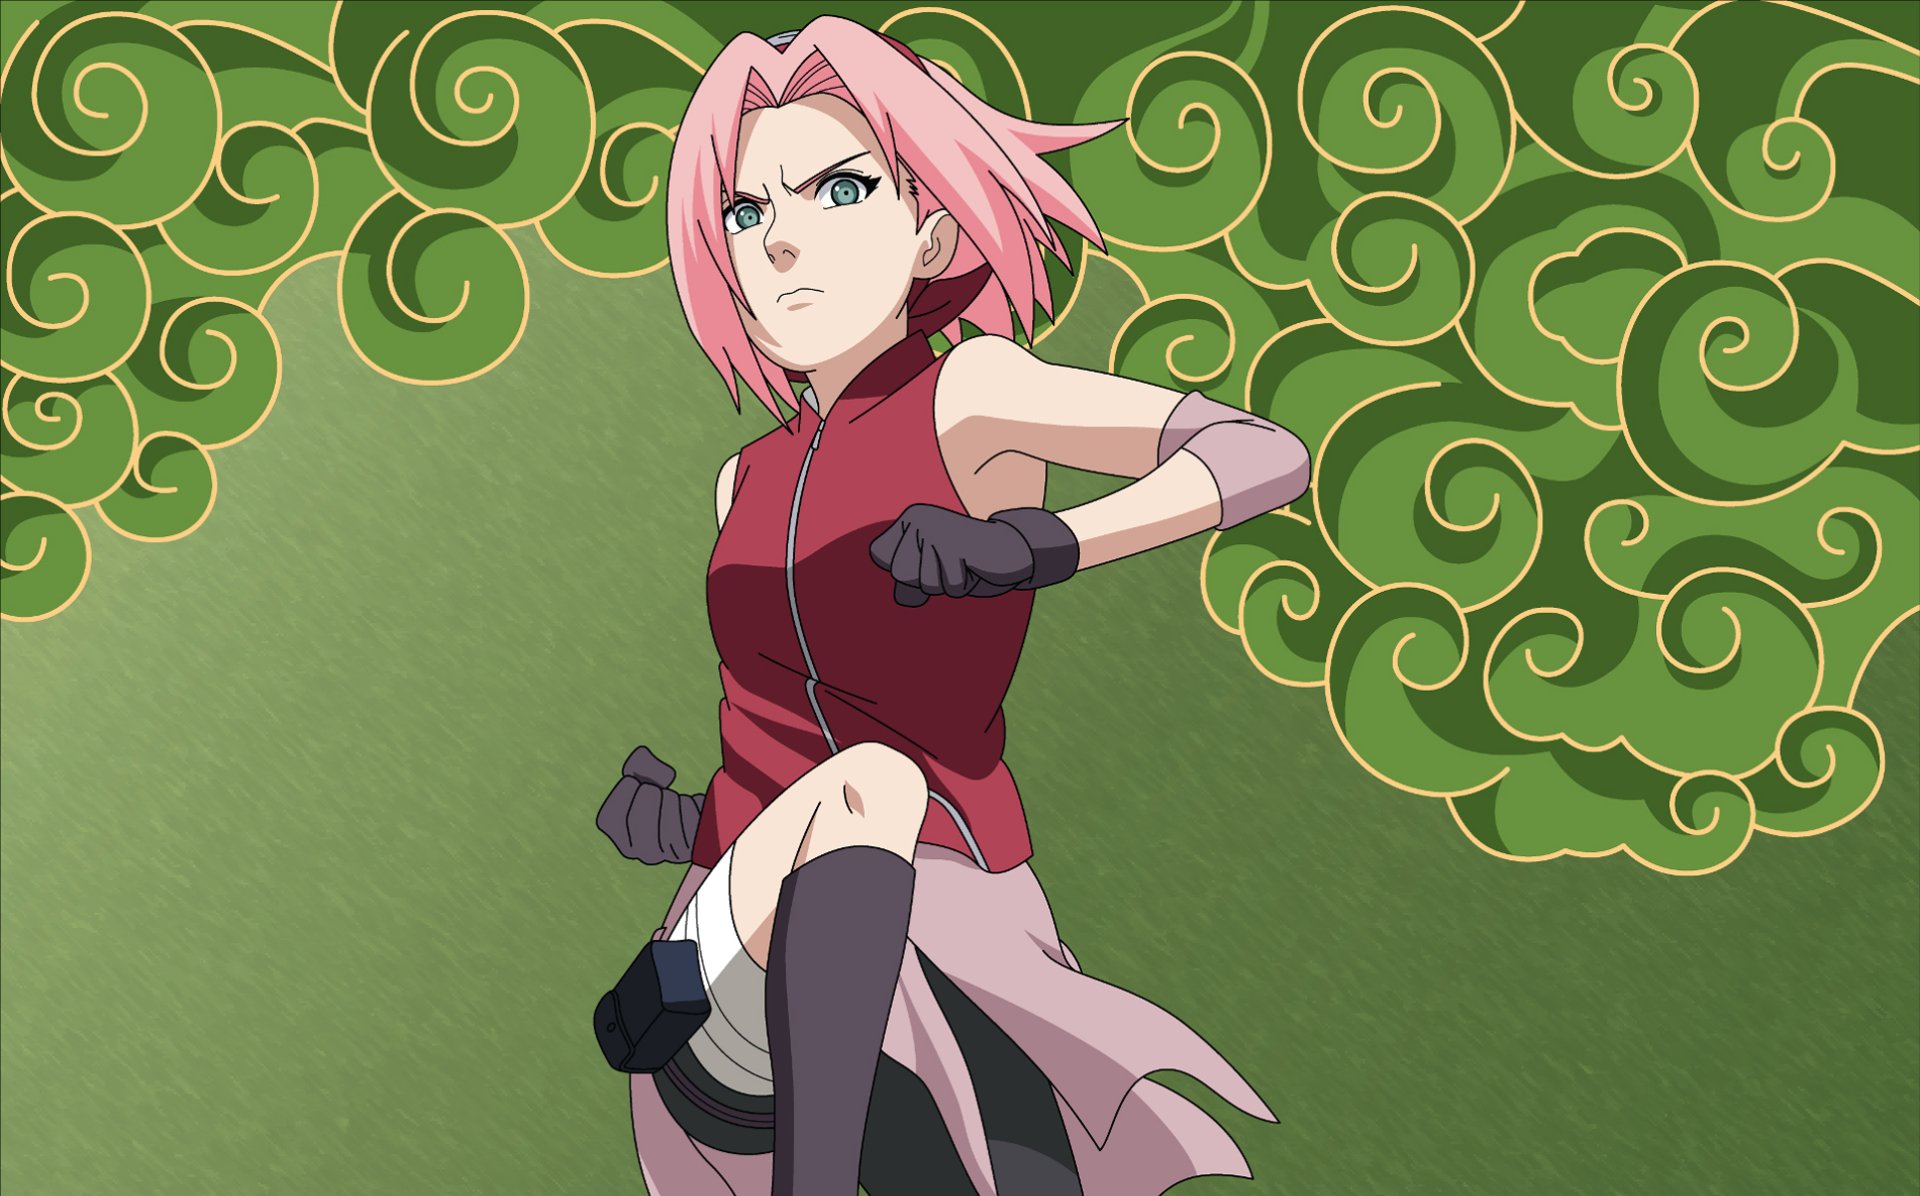 7. "Sakura Haruno" from Naruto - wide 8